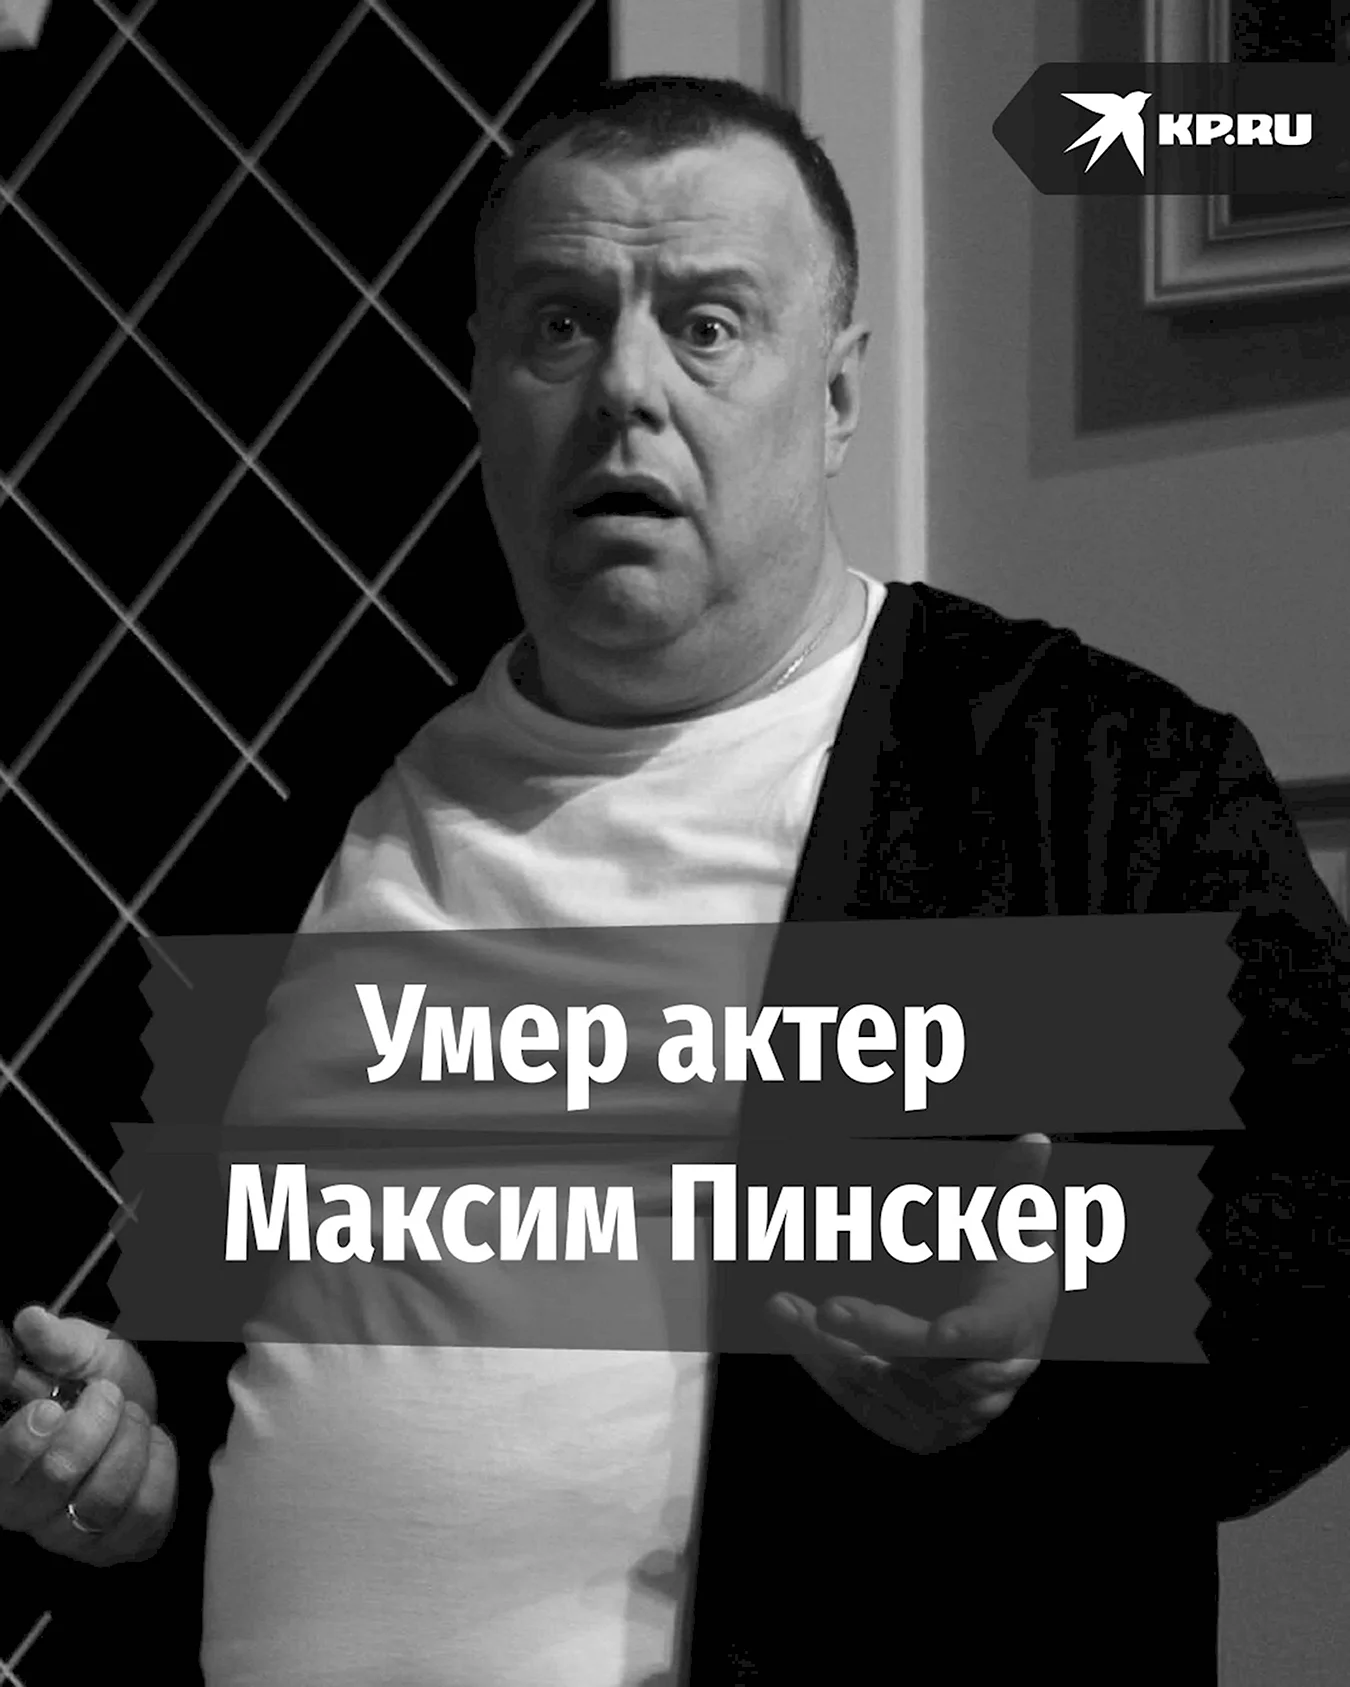 Максим Пинскер актер